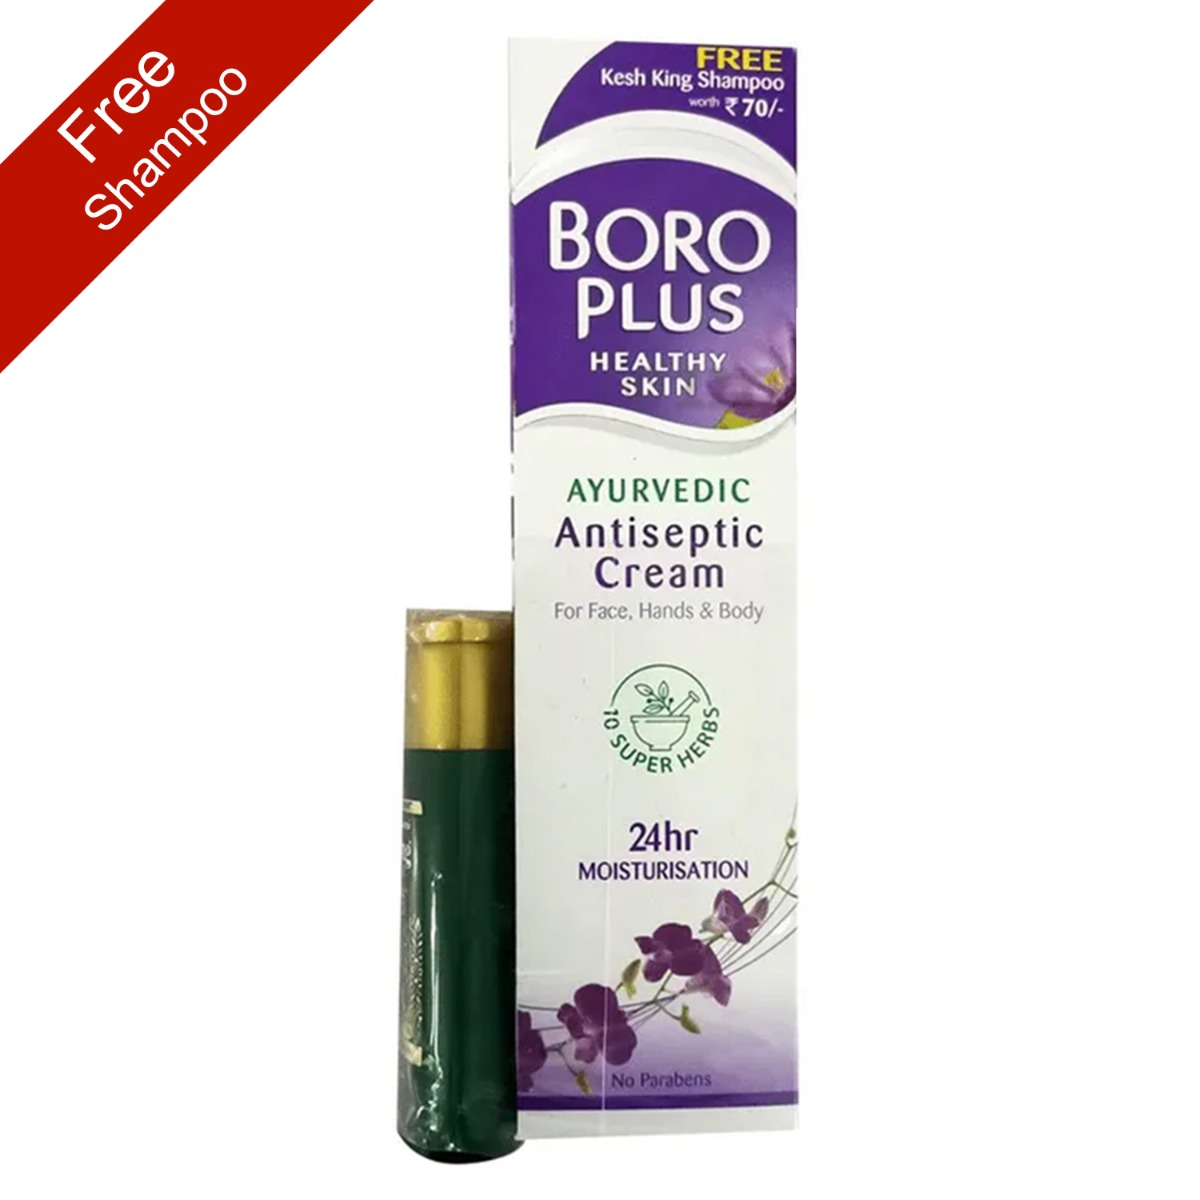 BoroPlus Ayurvedic Antiseptic Cream With Free Emami Kesh King Anti-Hairfall Shampoo, 340ml